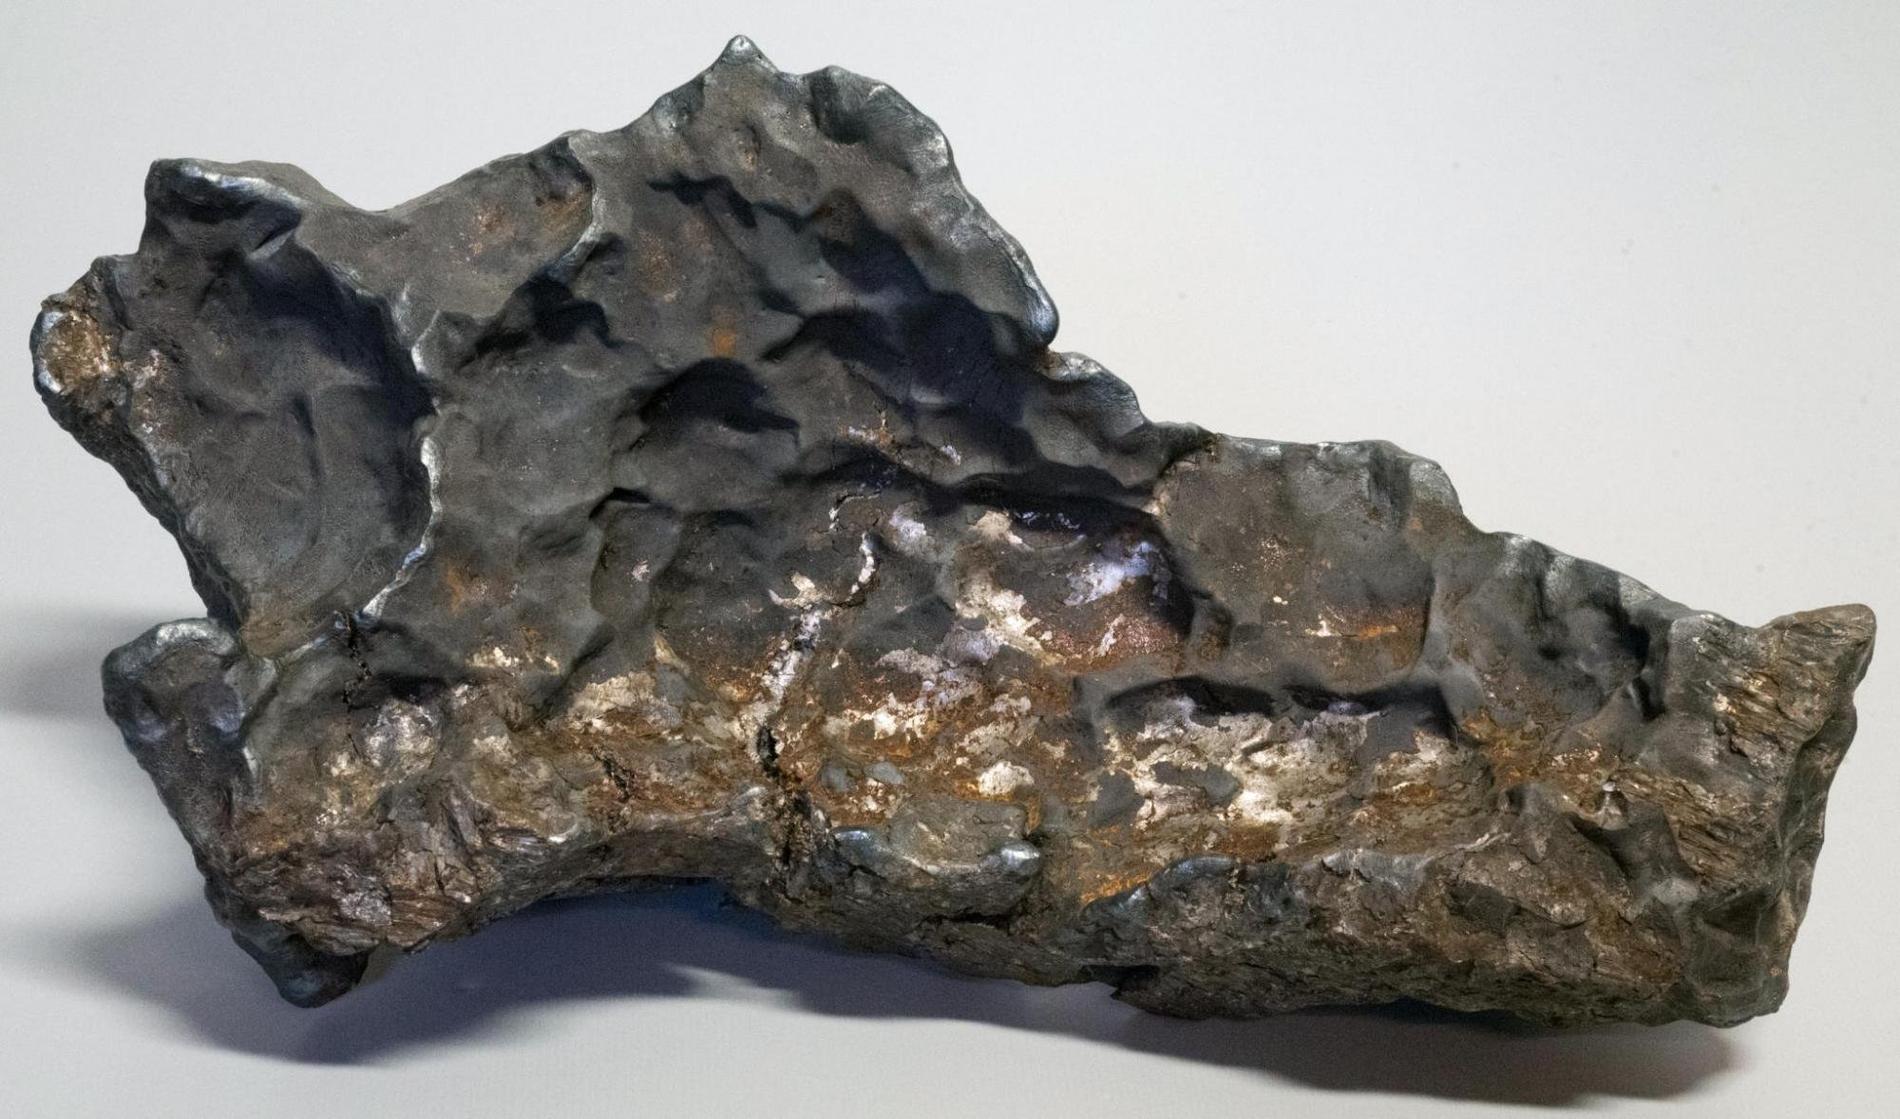 Den spektakulära järnmeteoriten som har hittats i Uppland.